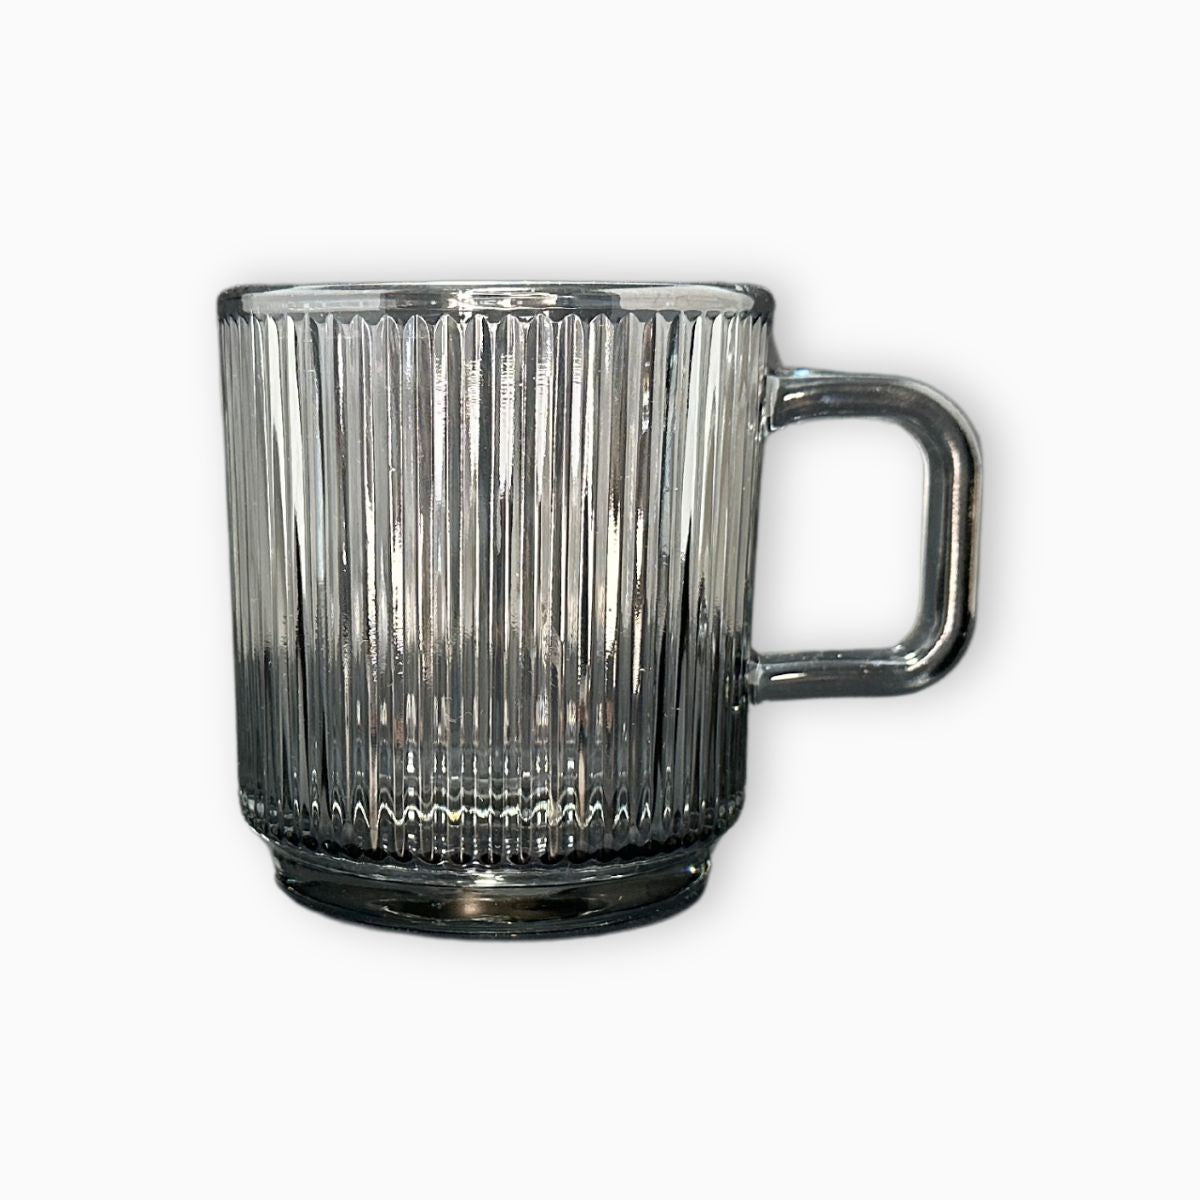 Glass mug - Black